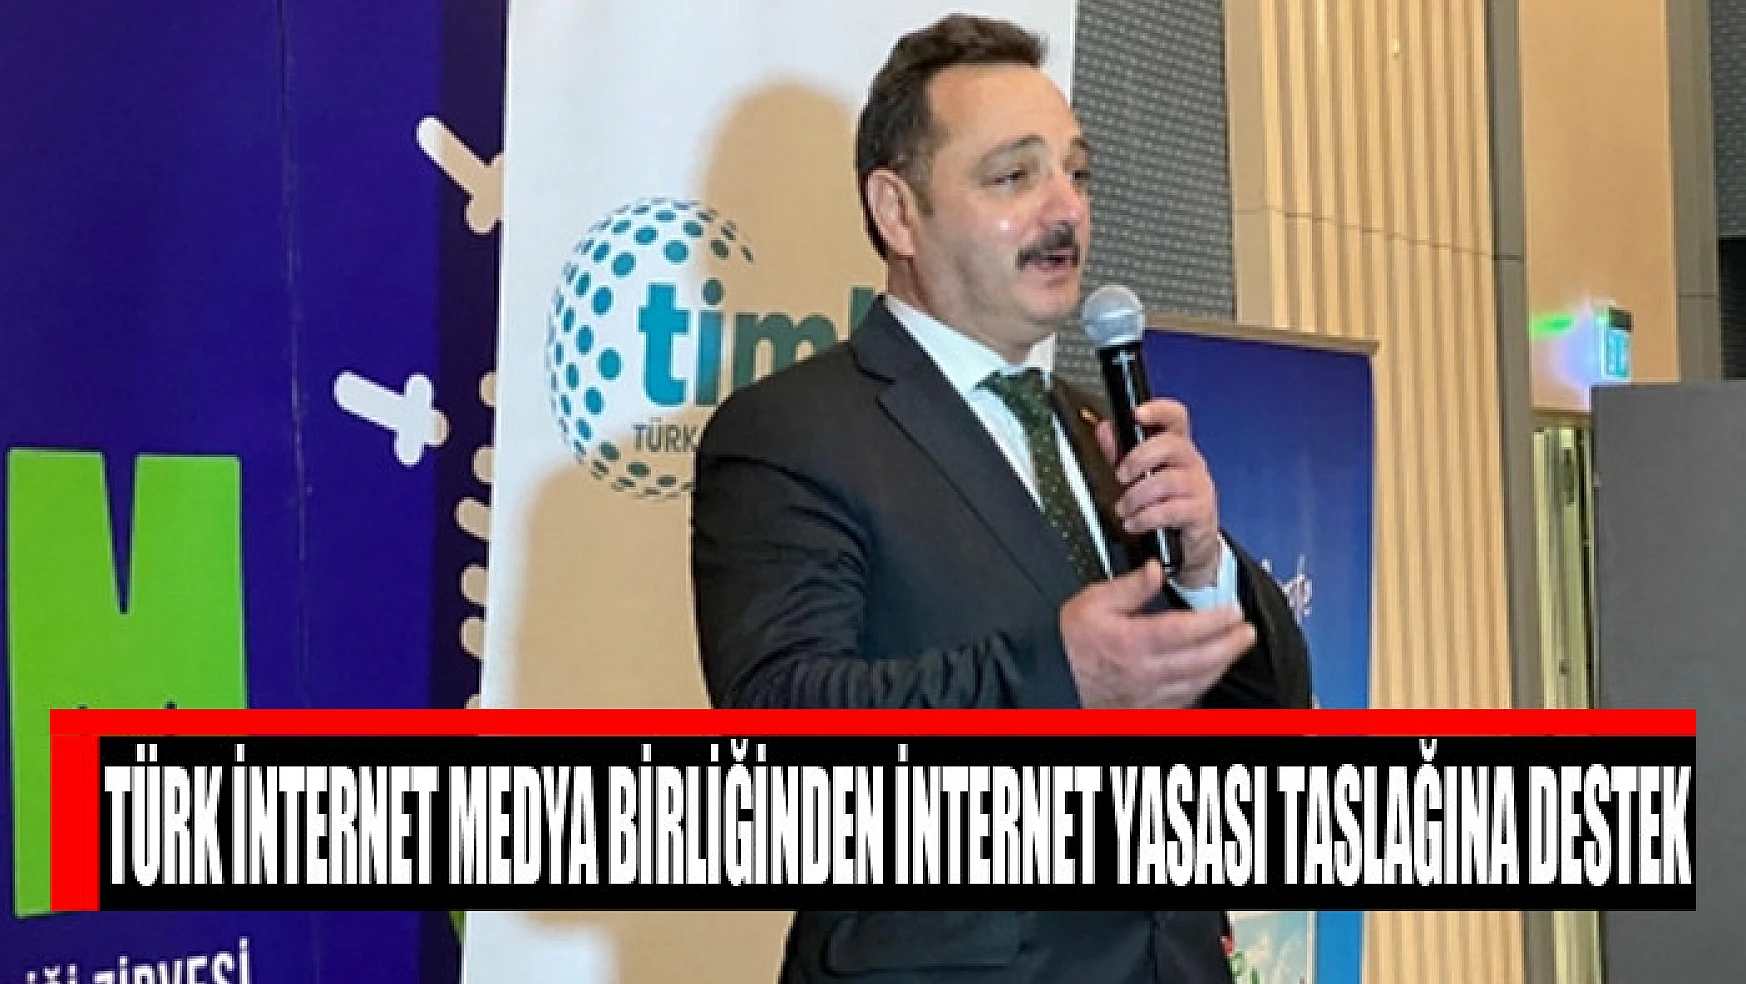 Türk İnternet Medya Birliğinden internet yasası taslağına destek